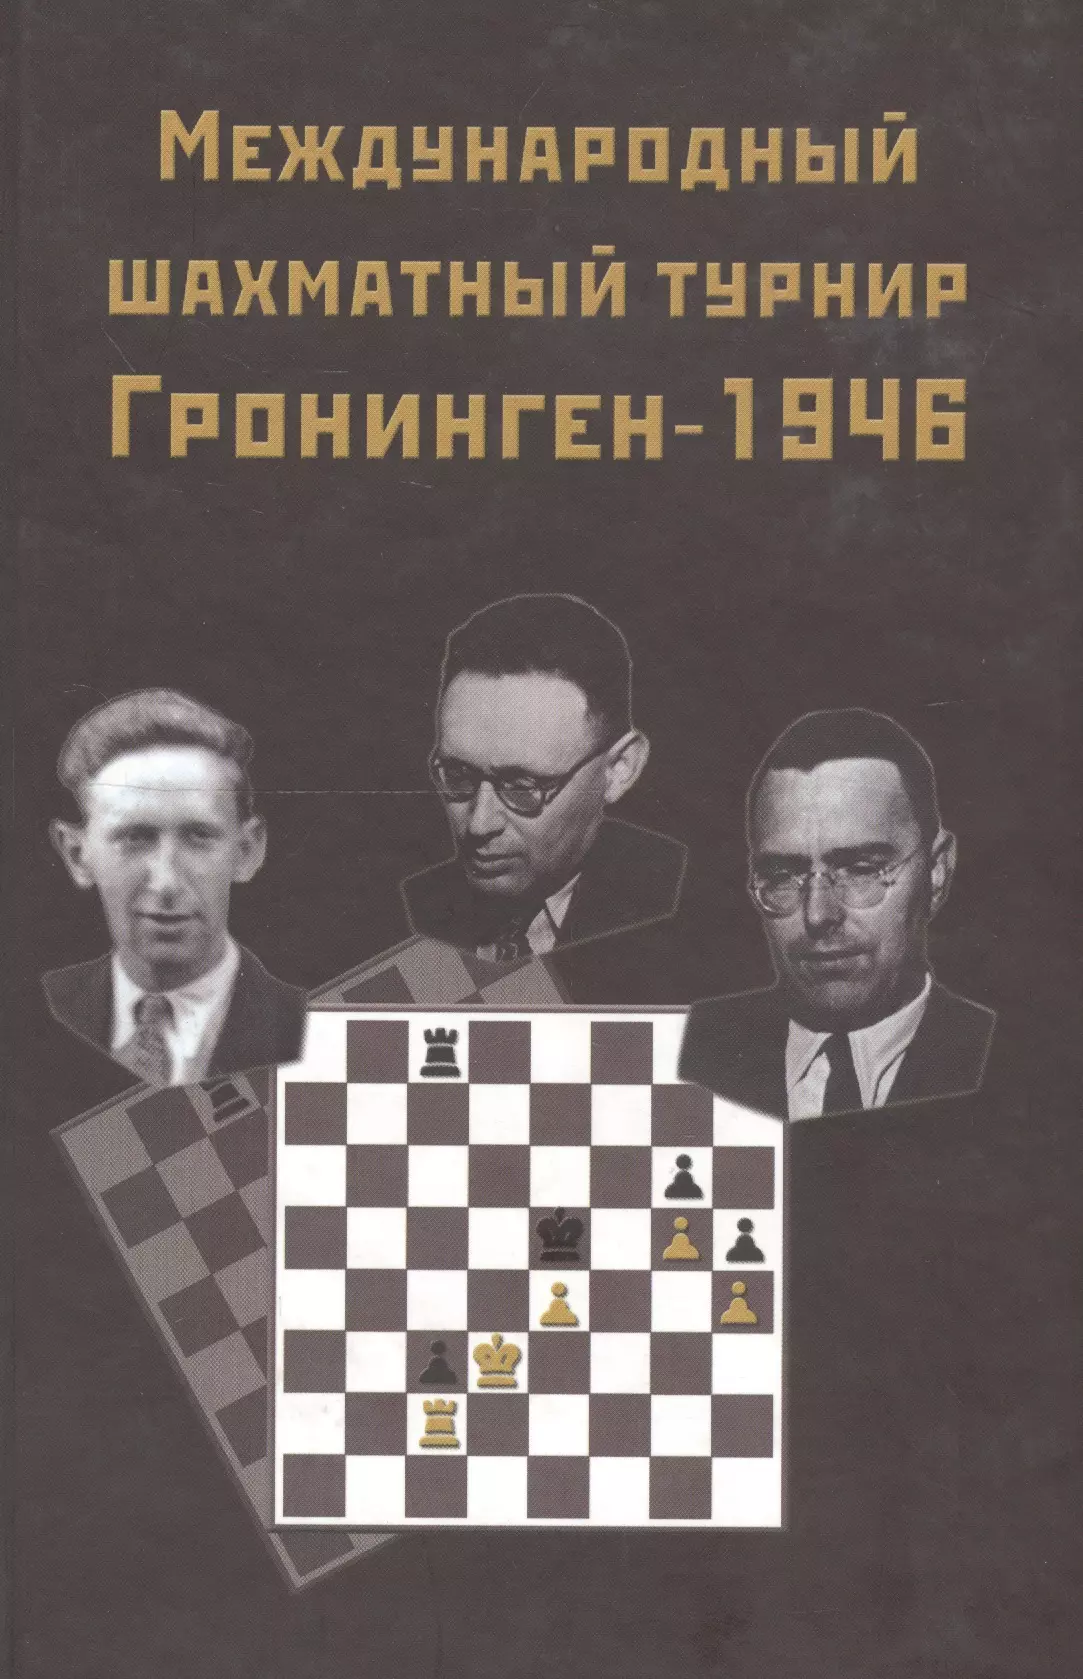 Ботвинник Михаил Моисеевич - Международный шахматный турнир Грониген-1946 (Ботвинник)